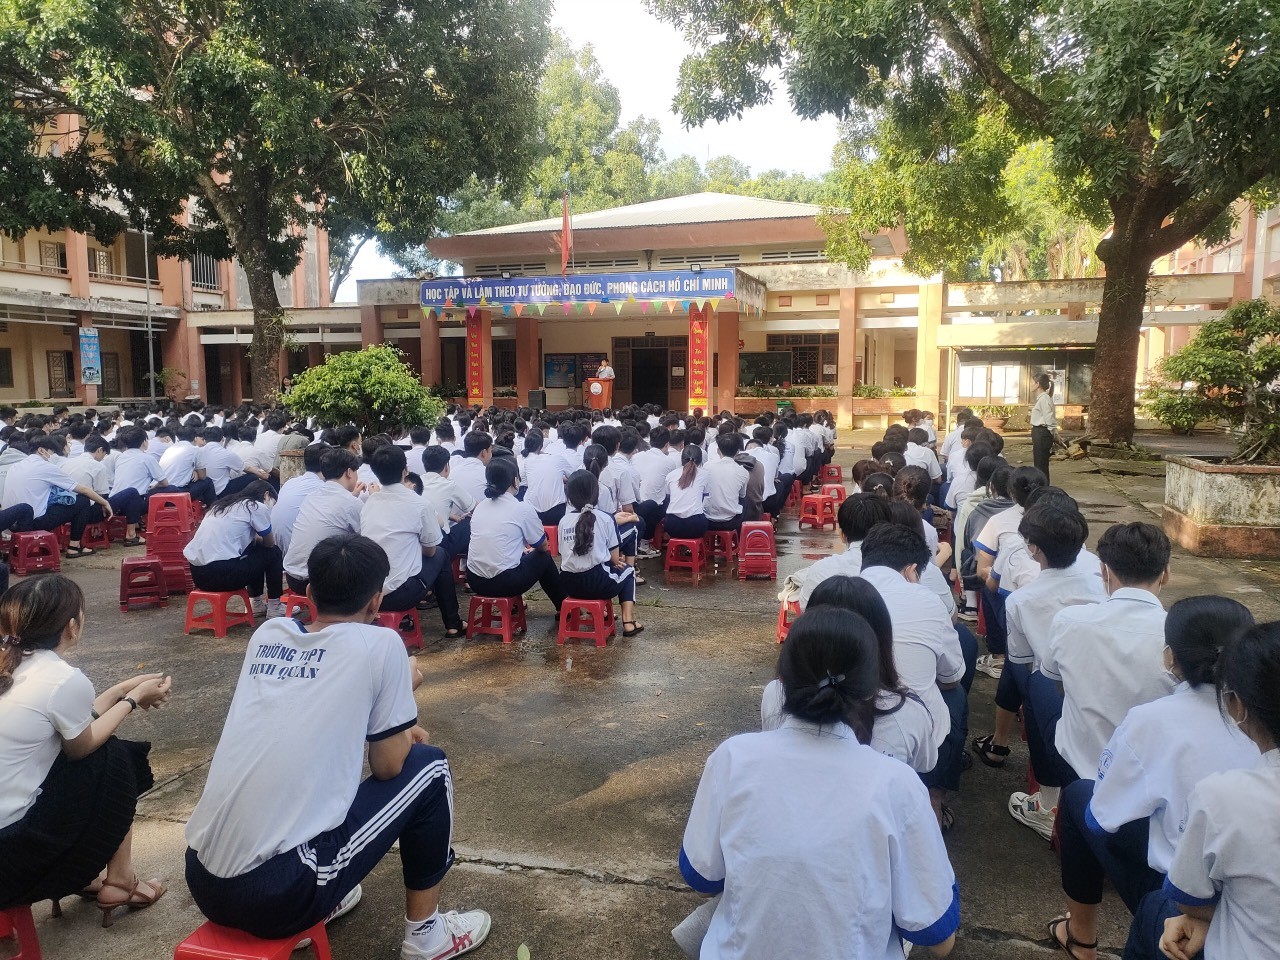 TVăn phòng Tuyển sinh và Tiếp nhận hồ sơ tỉnh Đồng Nai tổ chức tư vấn hướng nghiệp cho học sinh 10 trường THPT và 3 Trung tâm GDNN- GDTX